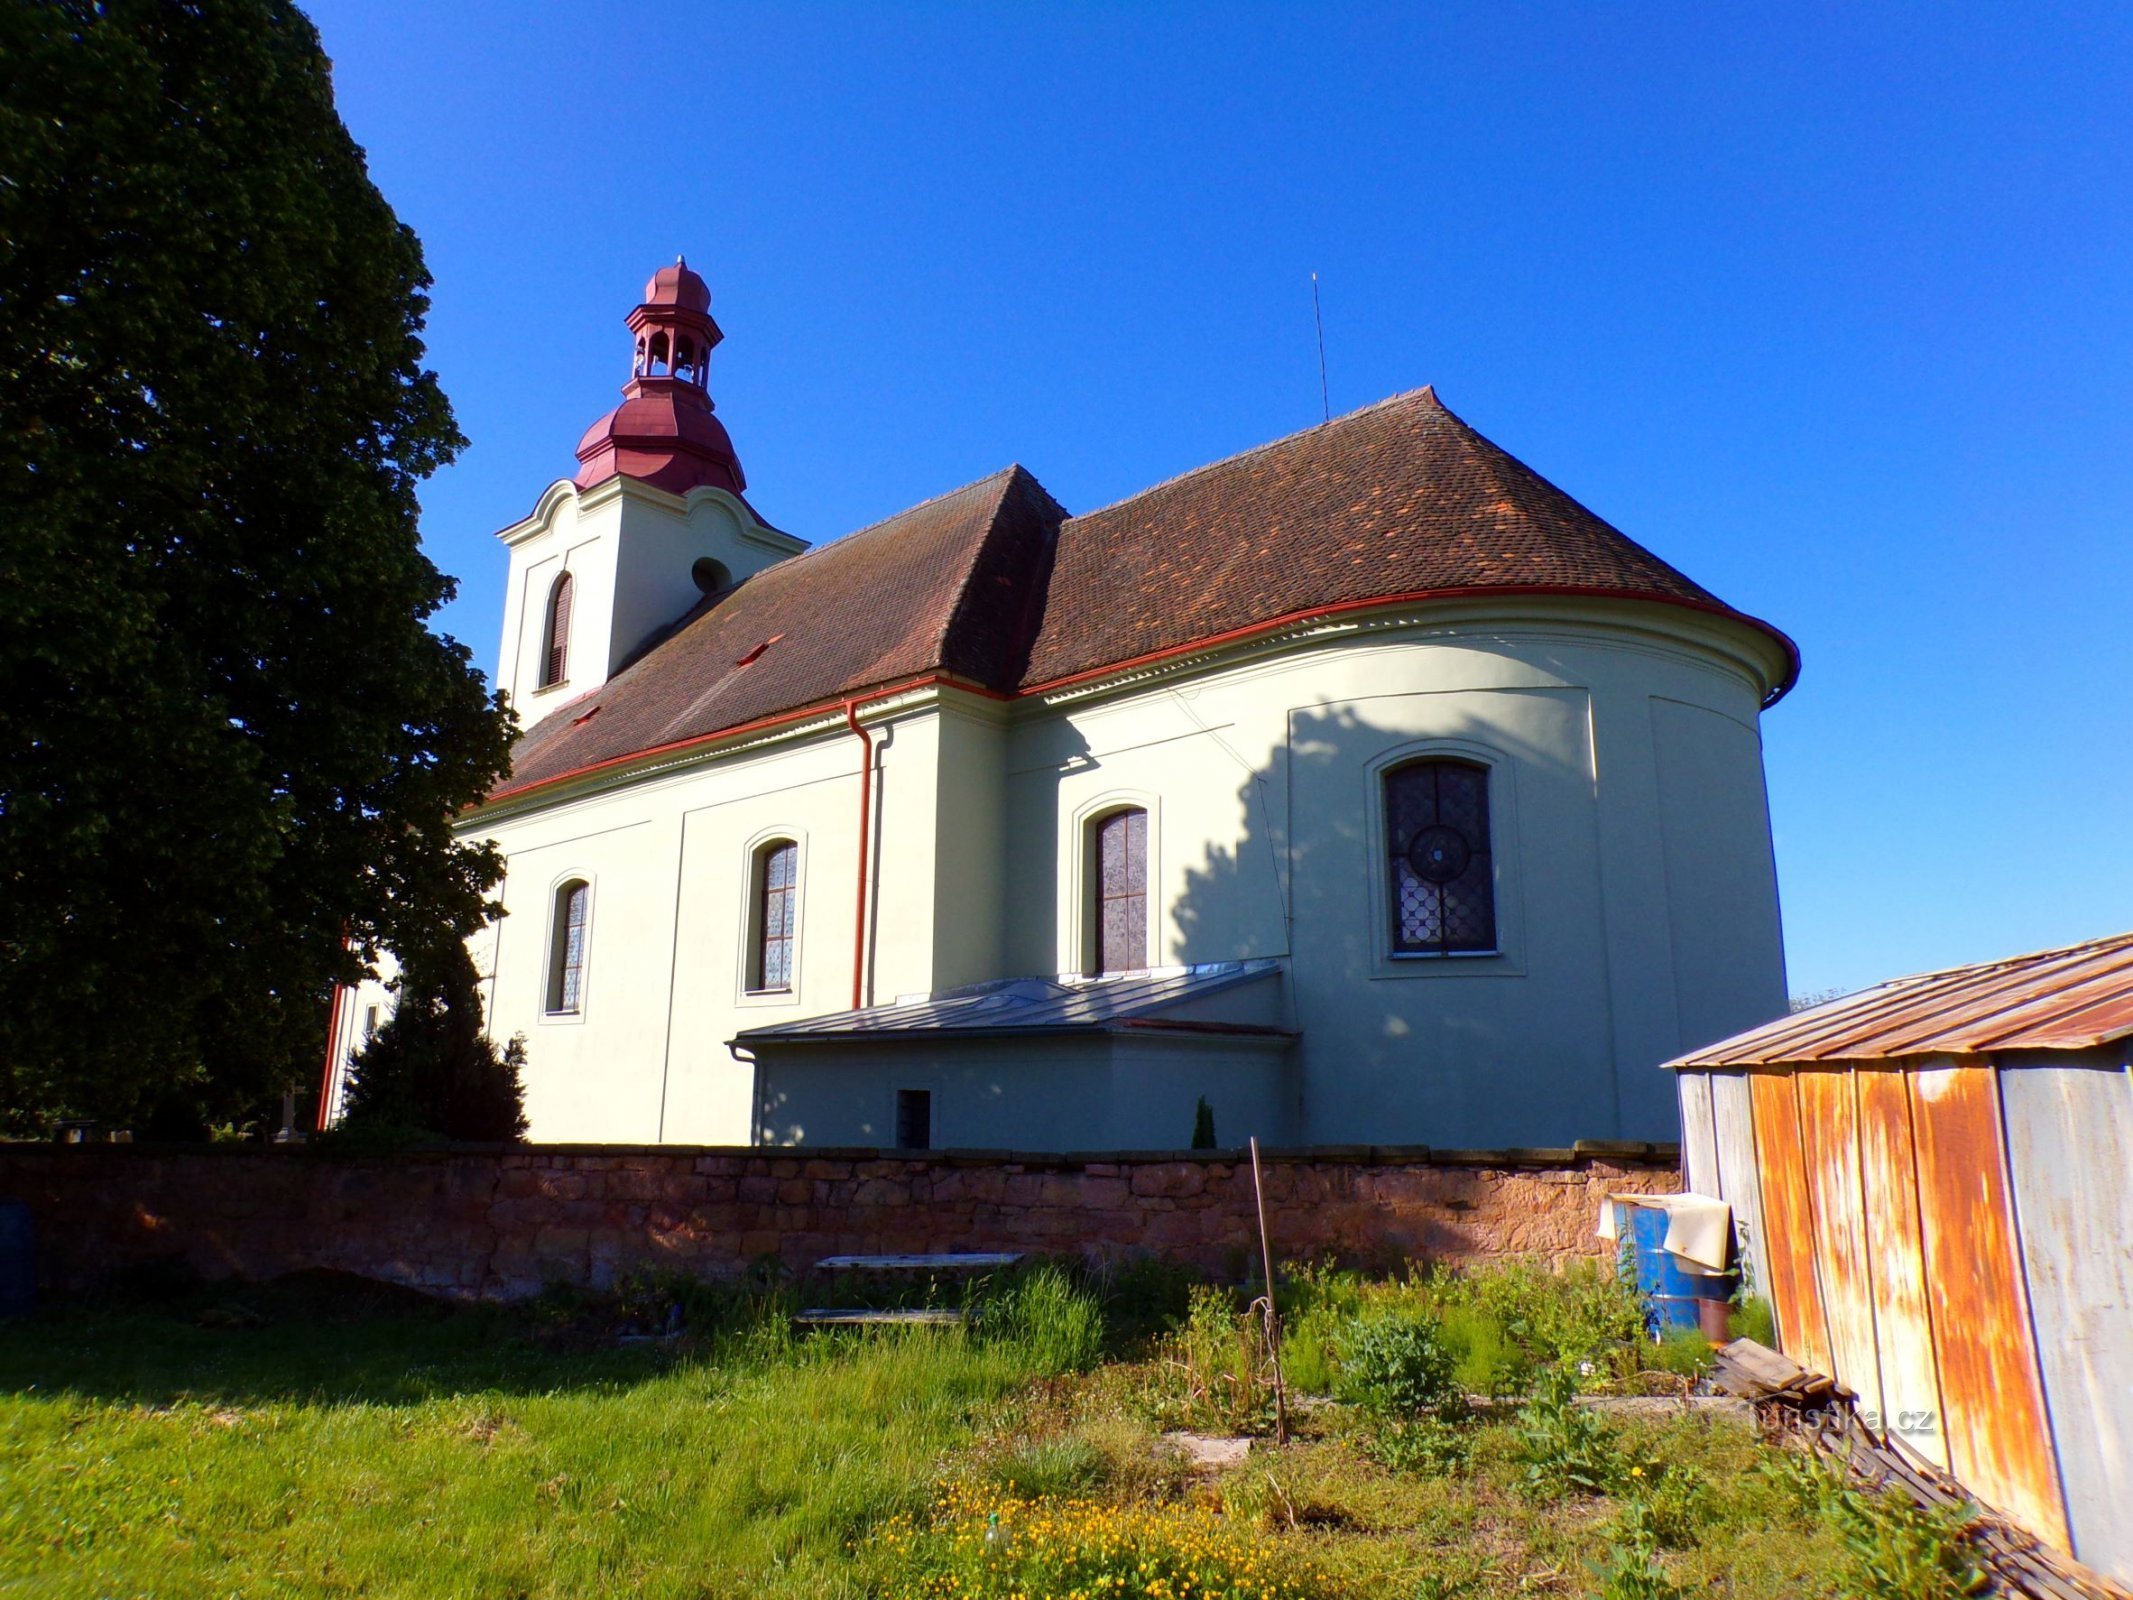 Igreja de S. Maria Madalena (Lužany, 31.5.2022/XNUMX/XNUMX)